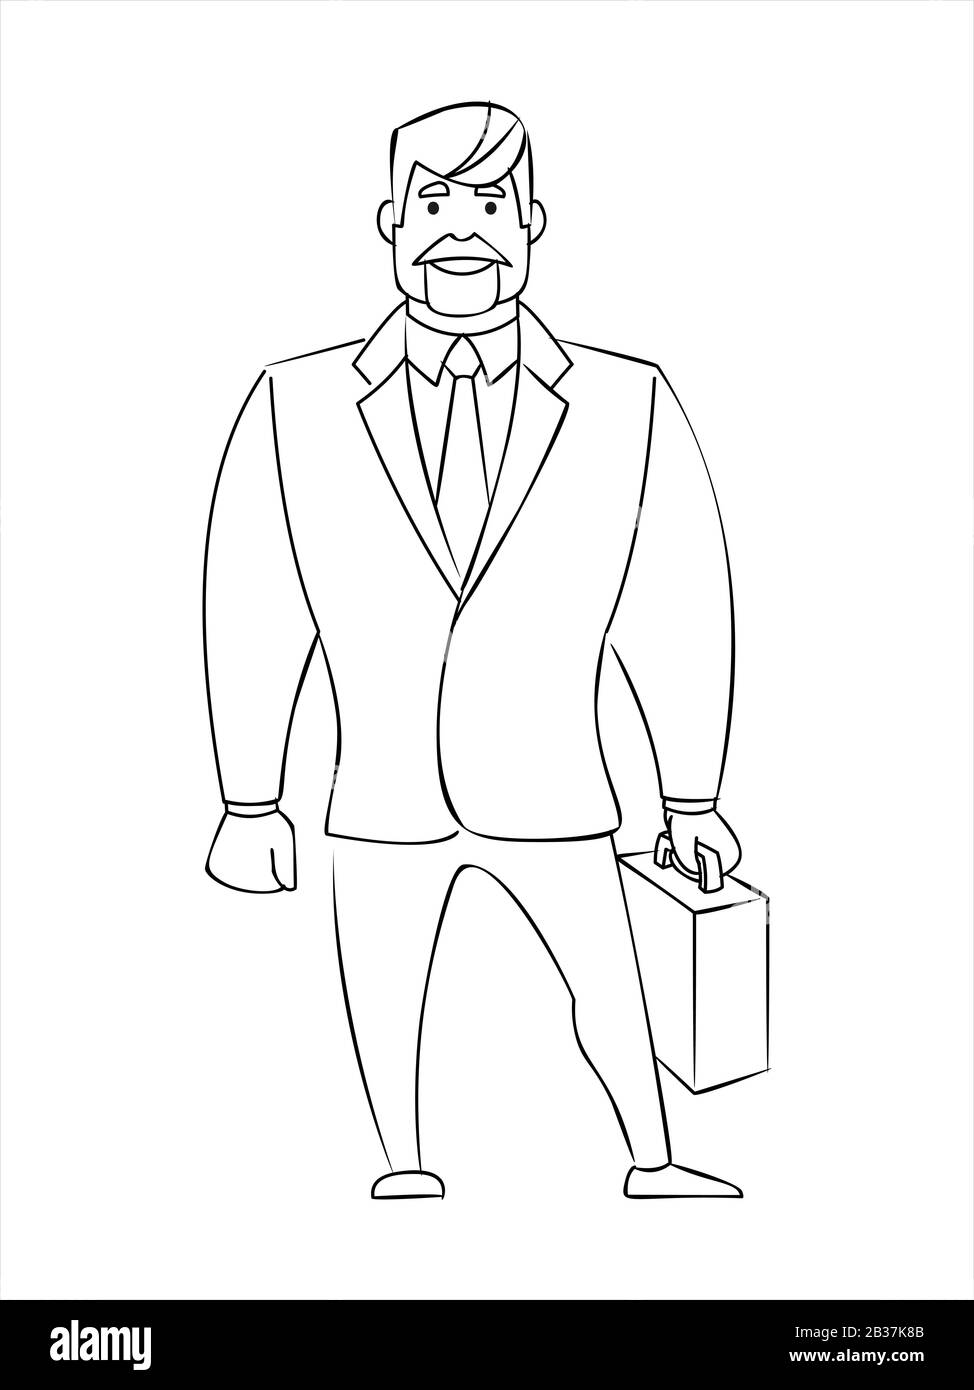 Descriva L'Uomo D'Affari in una tuta con una valigetta. Design dei personaggi. Illustrazione Vettoriale